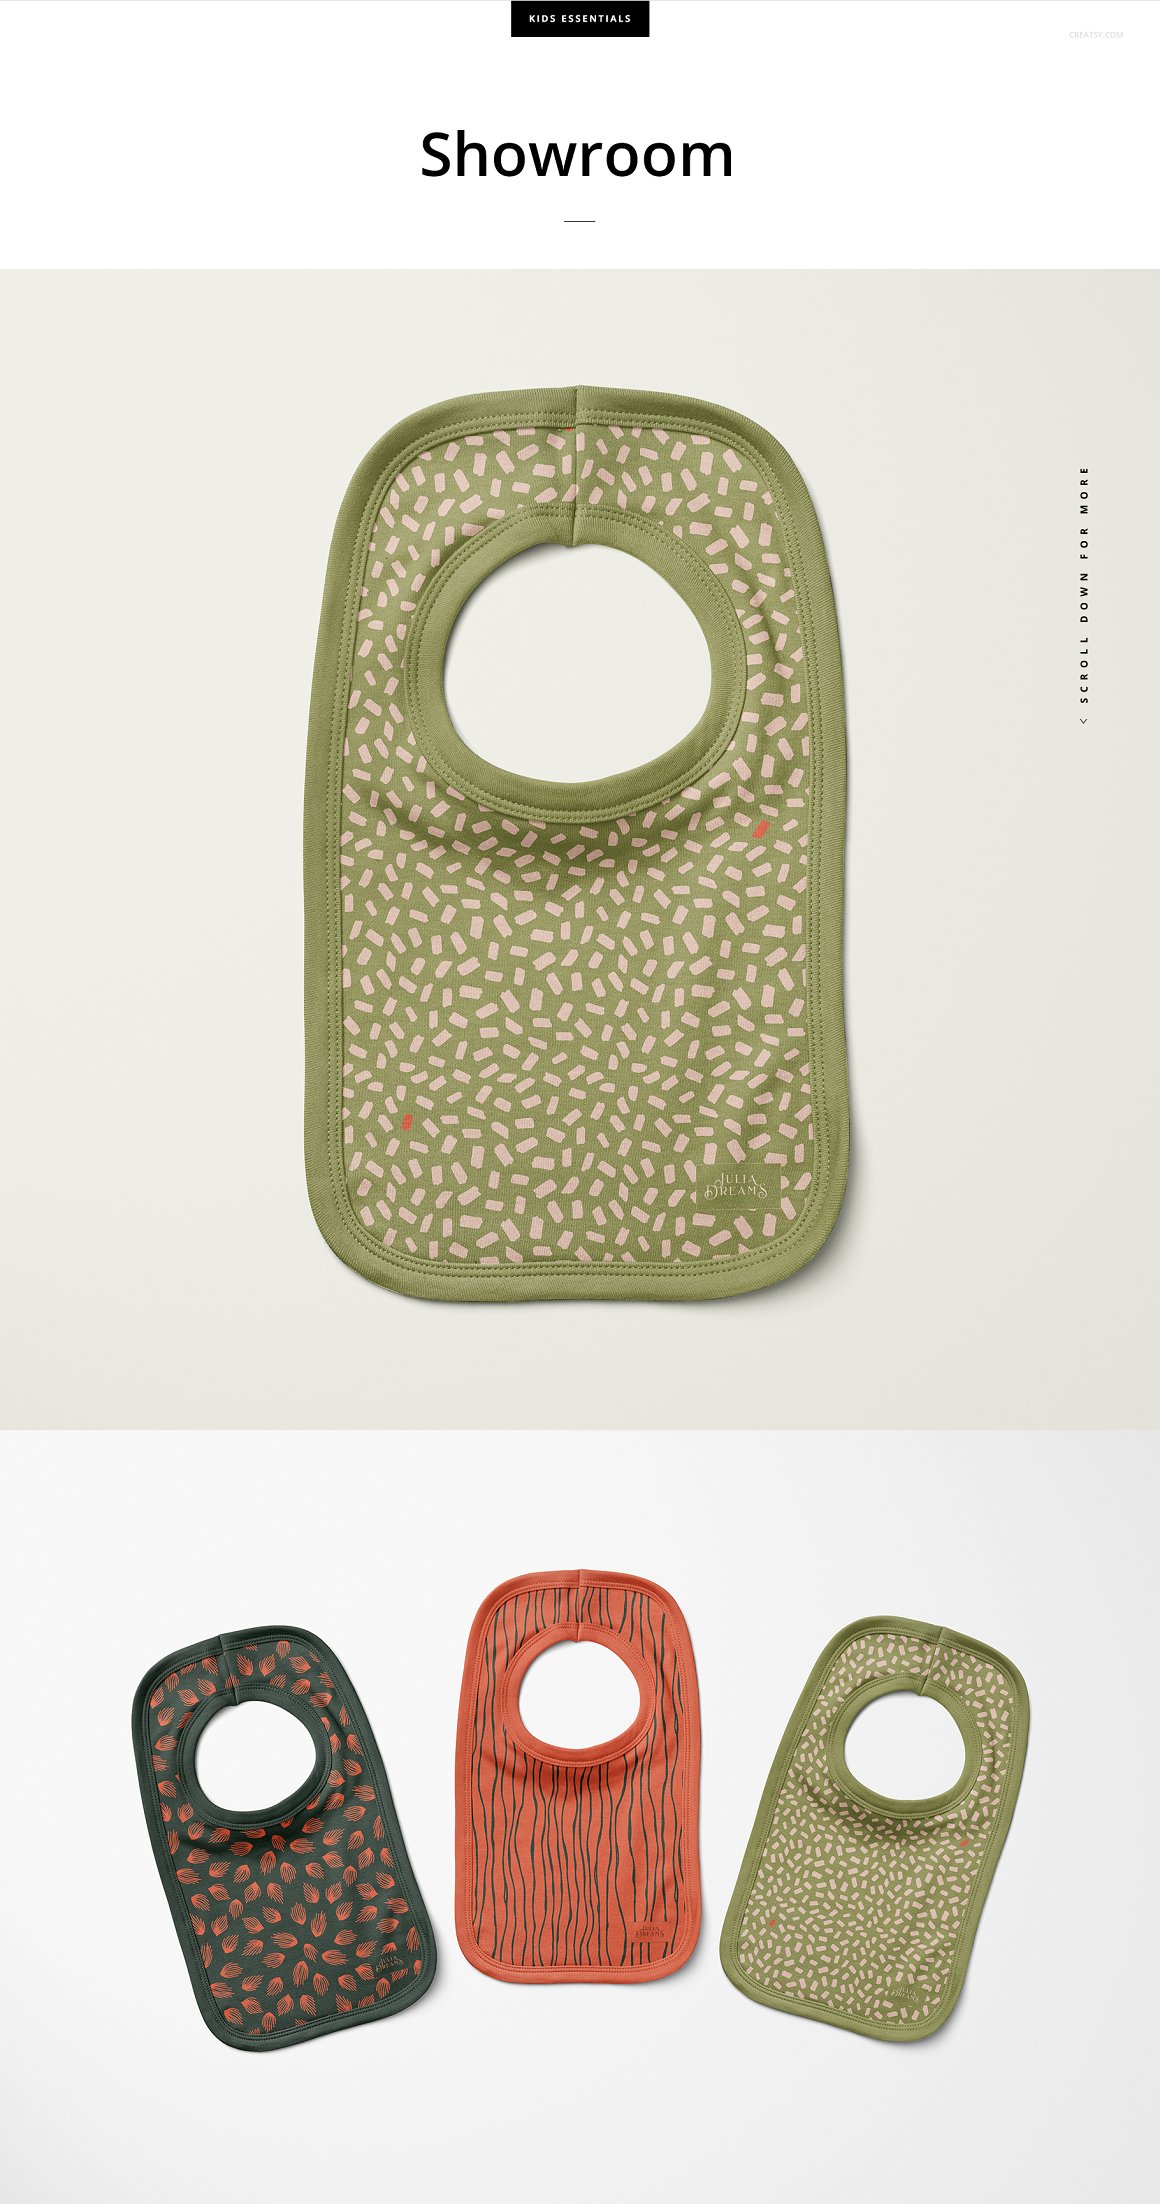 高品质婴儿围兜口水兜母婴品牌设计提案样机模板 Pullove